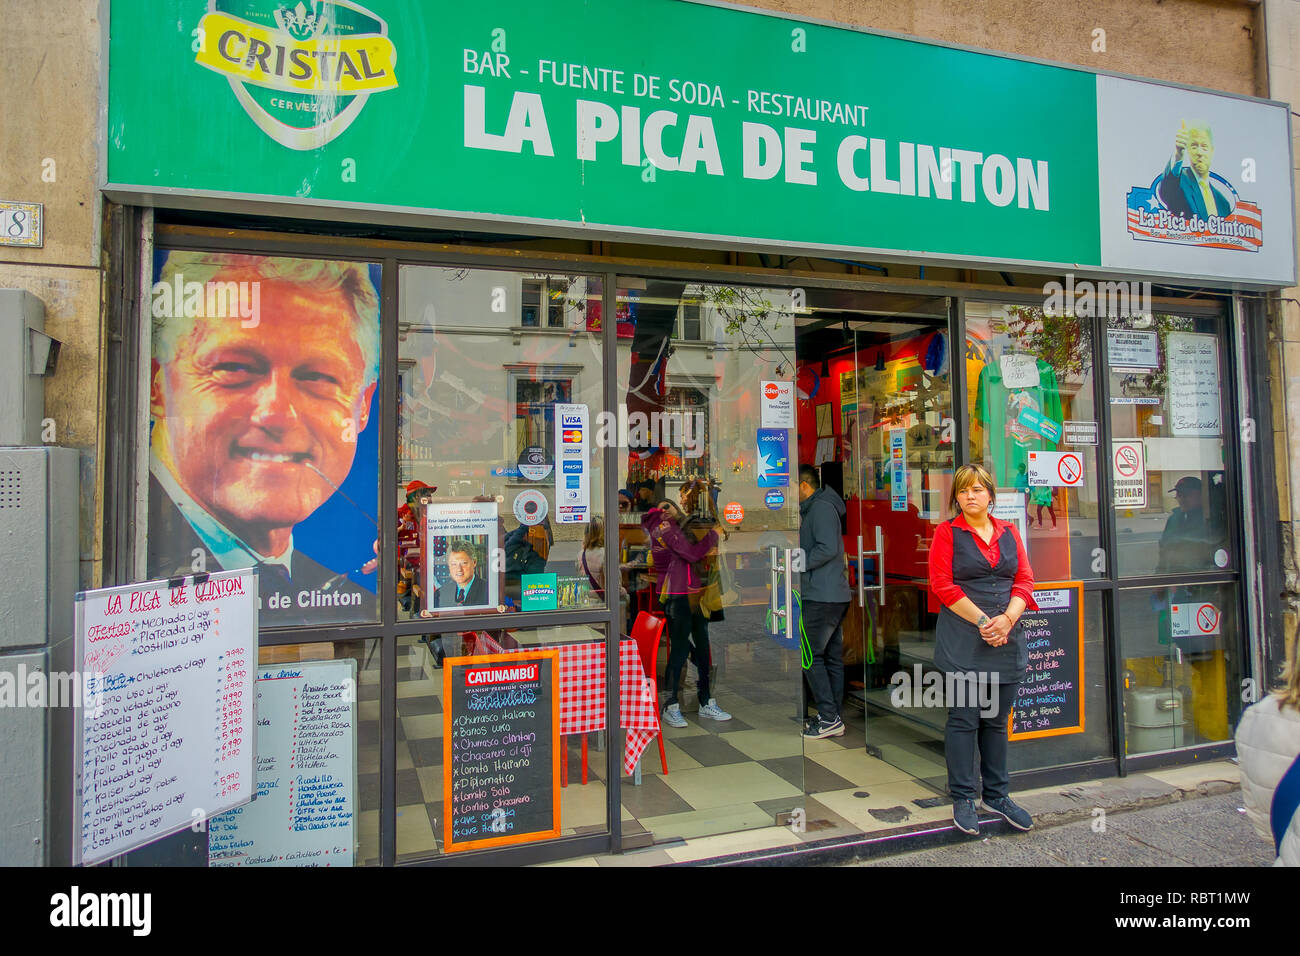 SANTIAGO, CHILI - 16 octobre 2018 : vue extérieure du restaurant, la pica de Clinton situé dans les rues de Santiago, Chili Banque D'Images